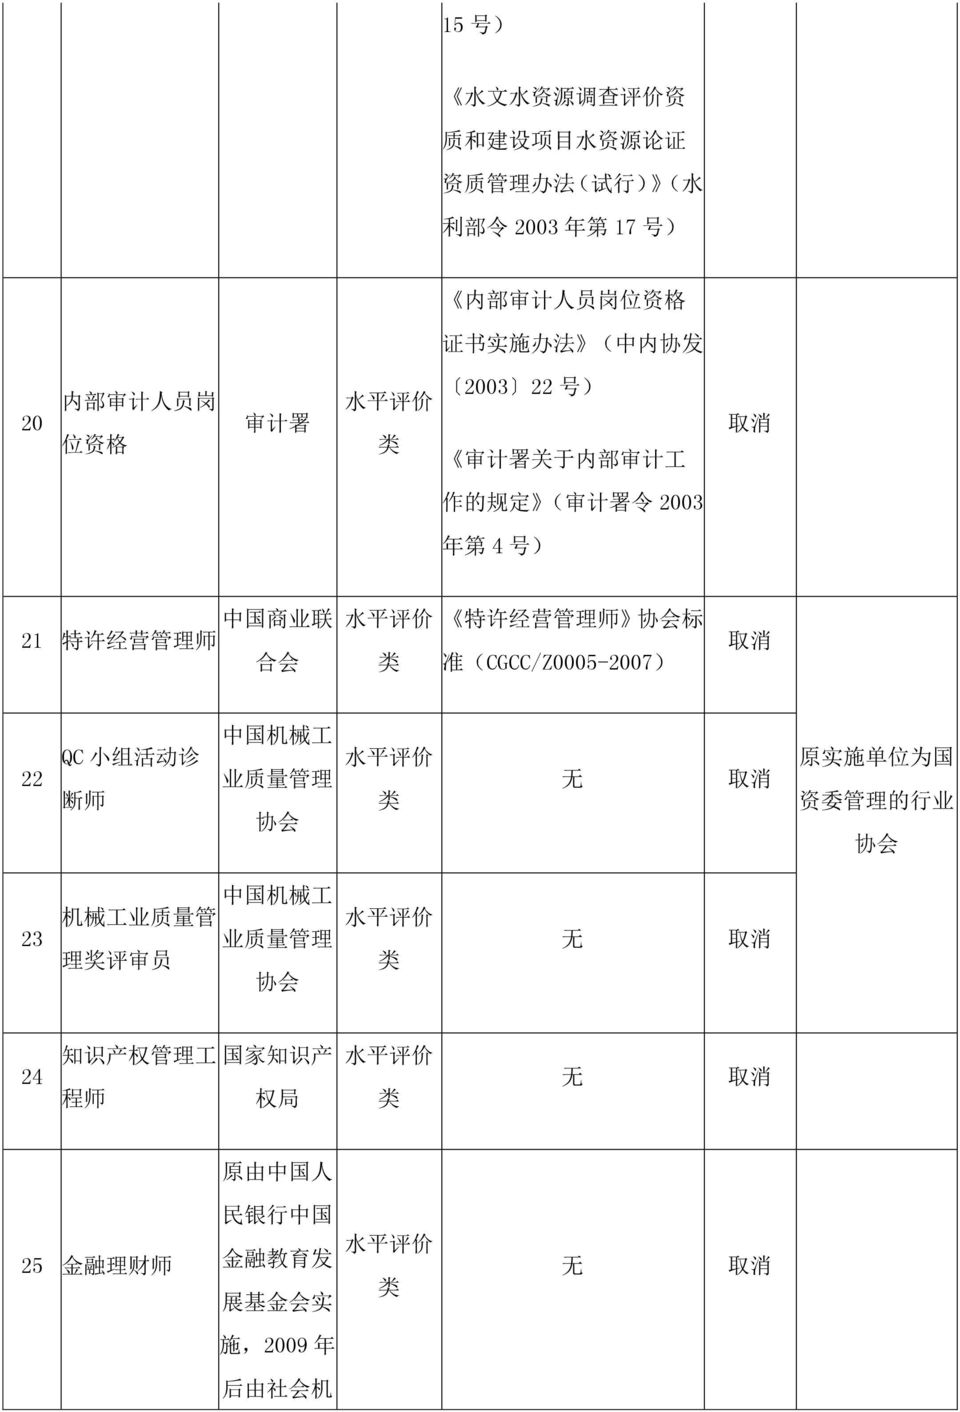 师 协 会 标 准 (CGCC/Z0005-2007) 22 QC 小 组 活 动 诊 断 师 中 国 机 械 工 业 质 量 管 理 协 会 原 实 施 单 位 为 国 资 委 管 理 的 行 业 协 会 23 中 国 机 械 工 机 械 工 业 质 量